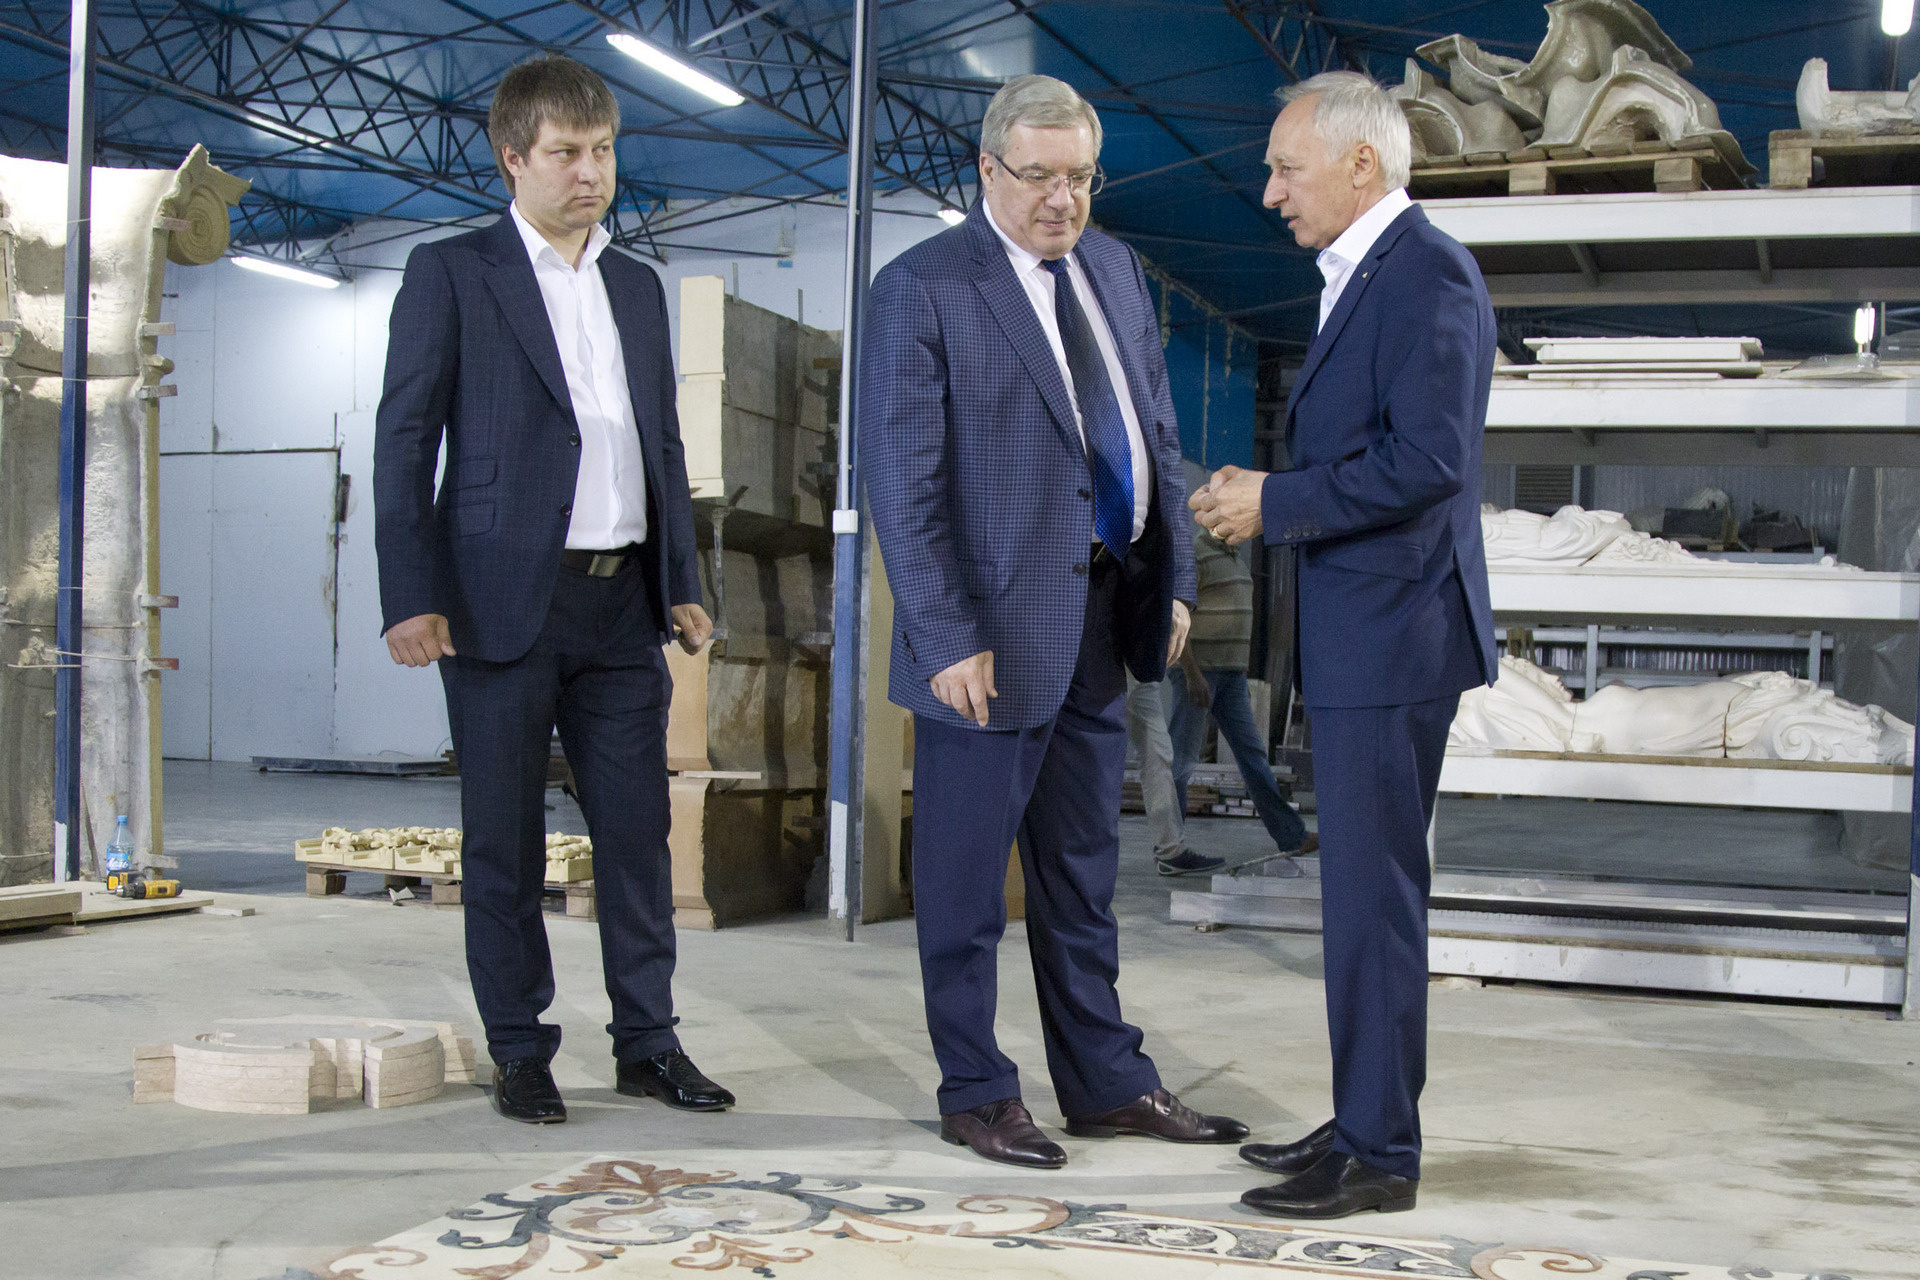 Данил (слева) и Владимир (справа) Гуриевы на одном из своих предприятий с губернатором Виктором Толоконским